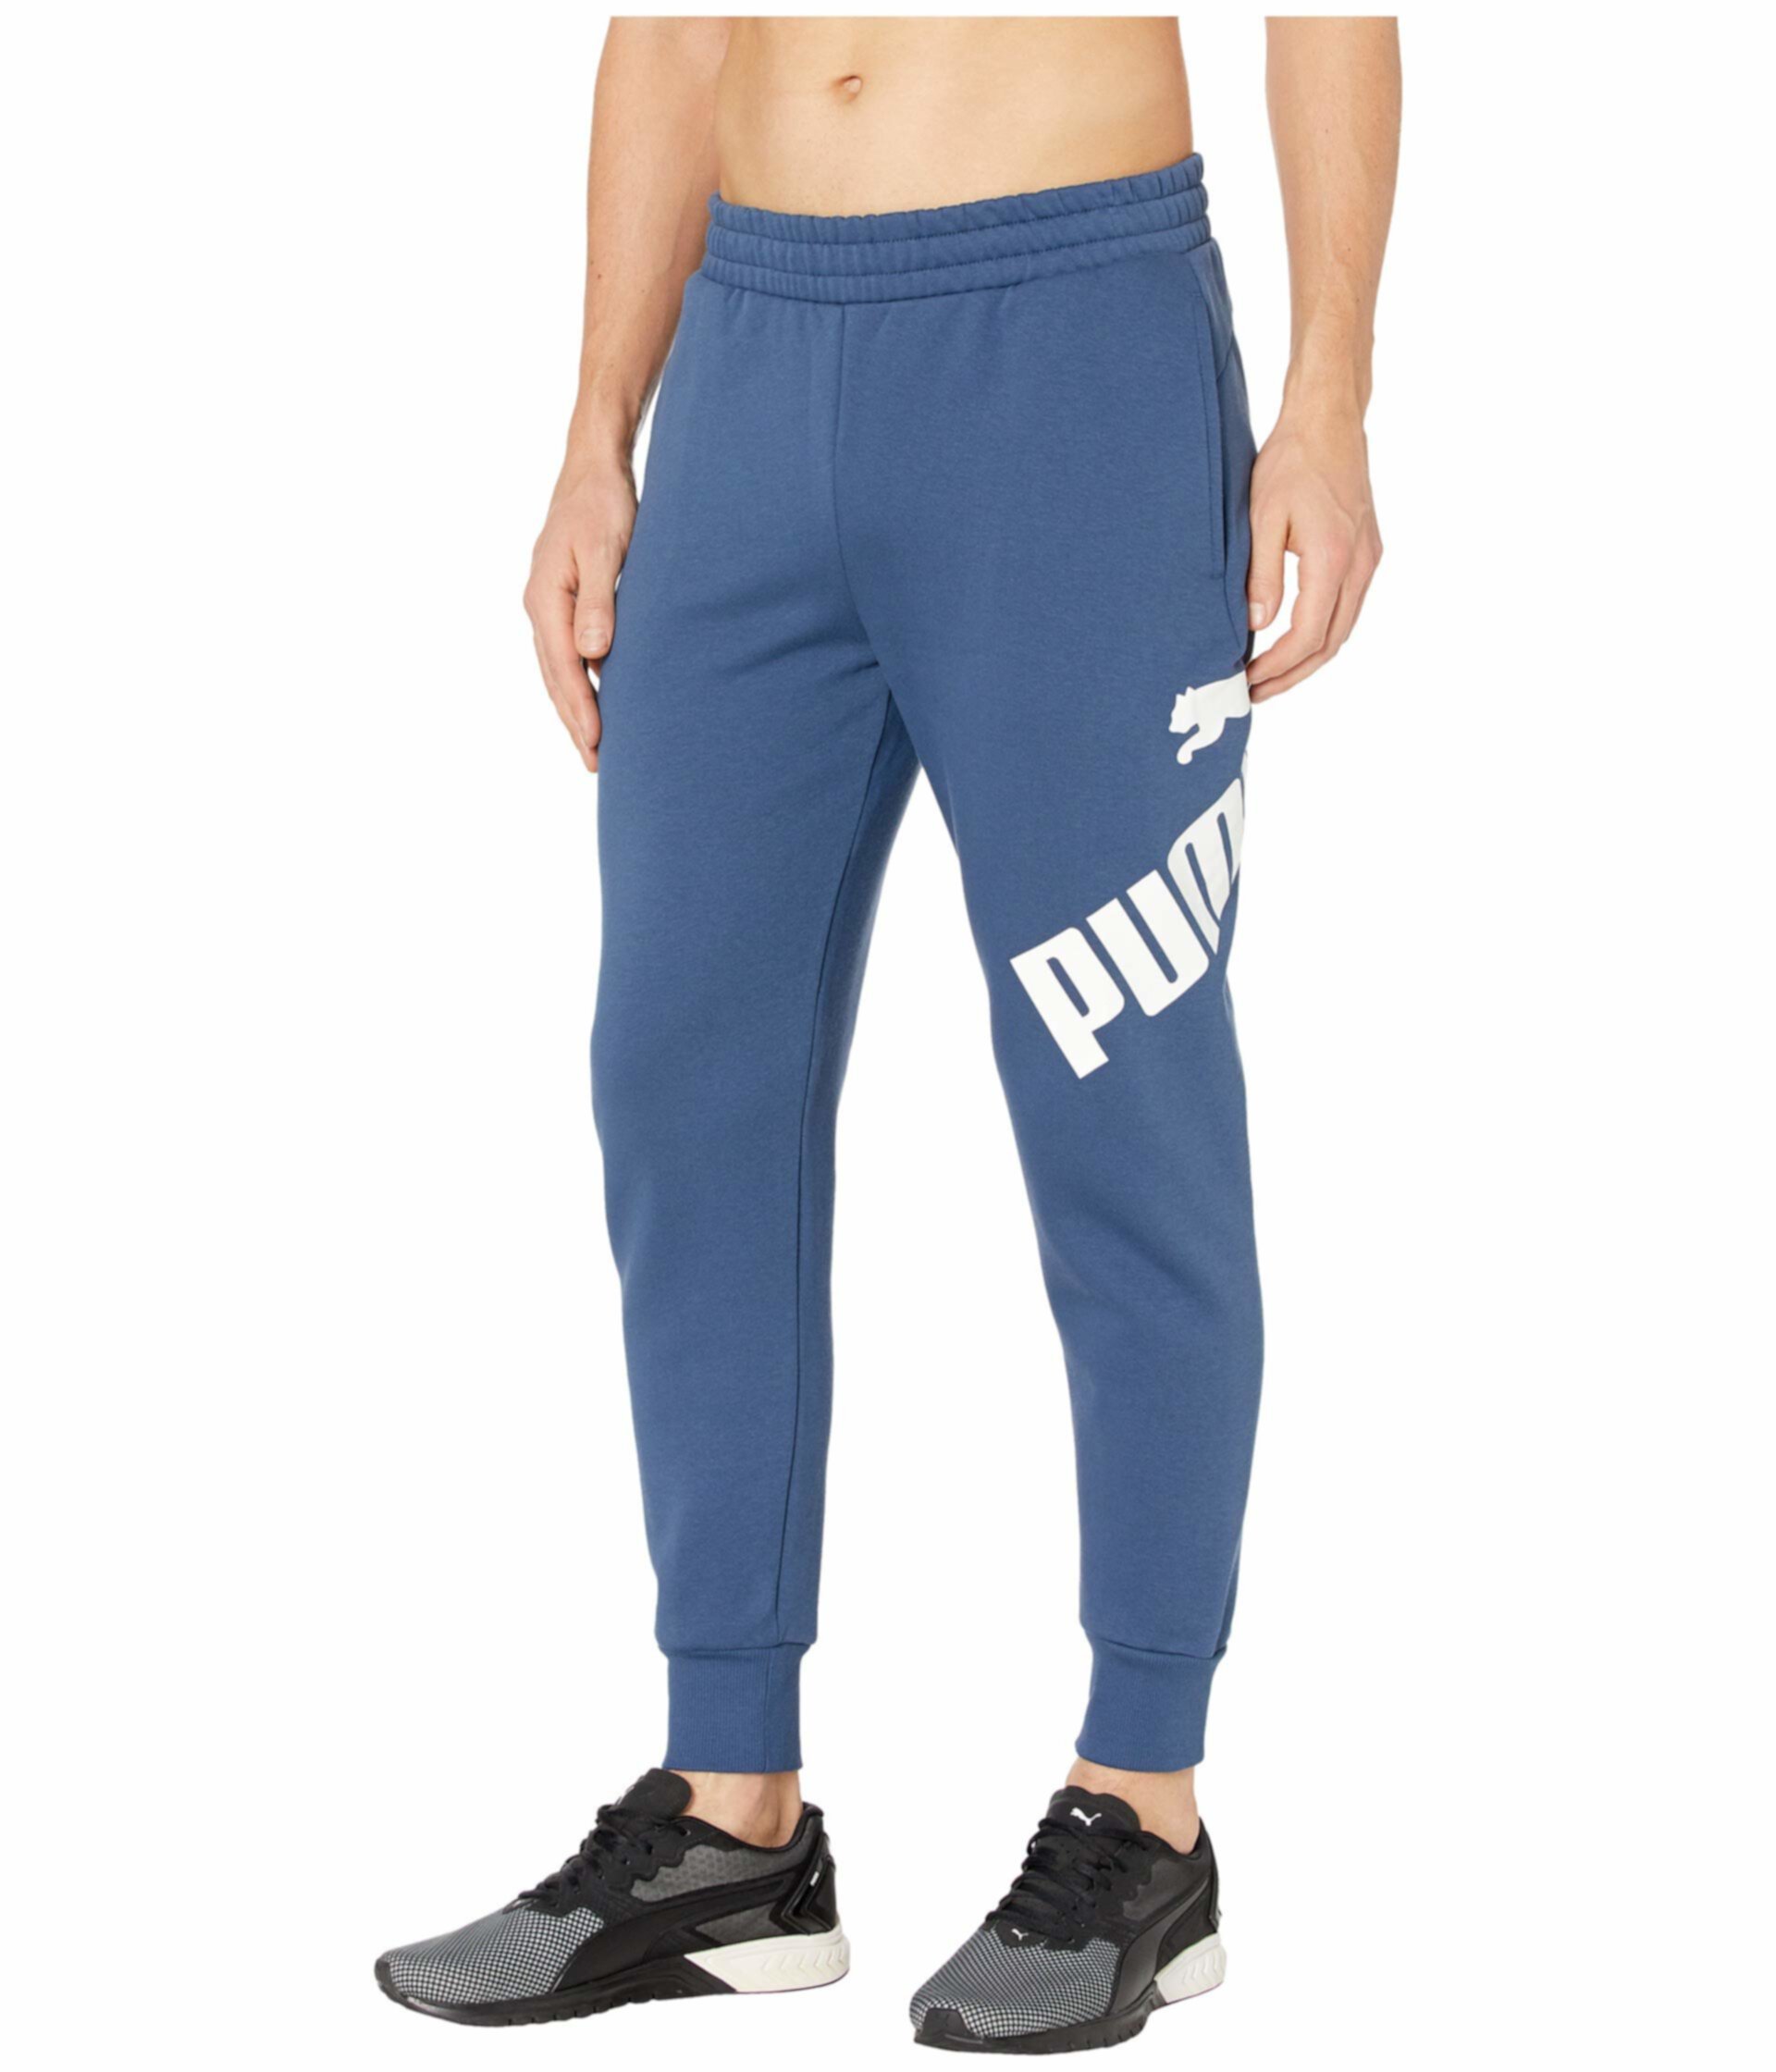 Большие флисовые штаны с логотипом PUMA